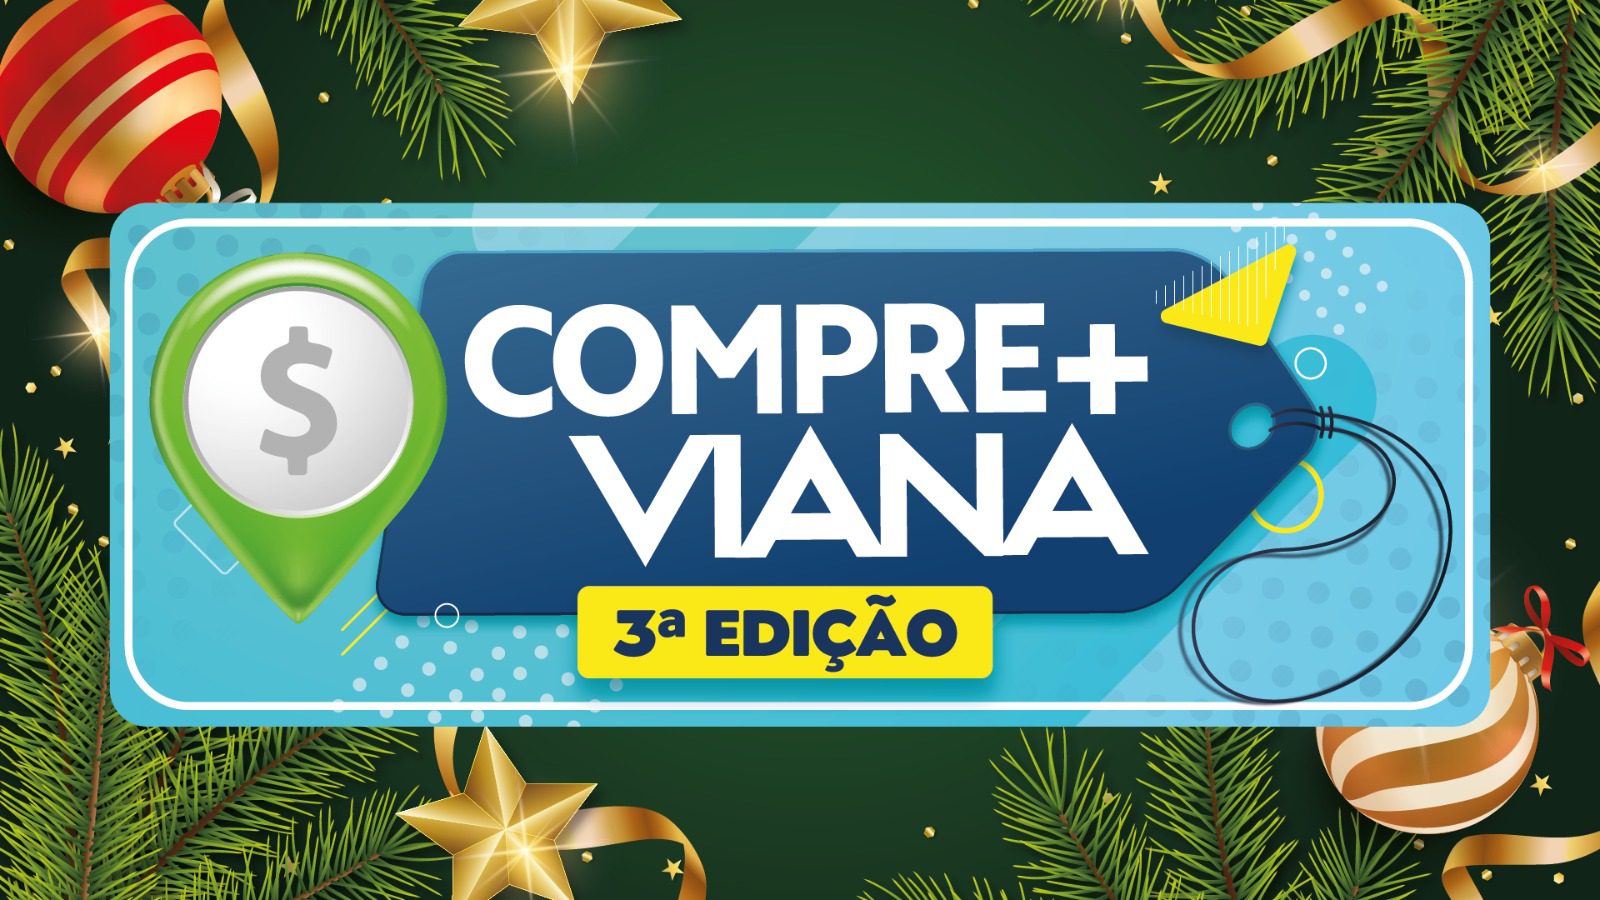 Compre+Viana: Cupons da campanha agora disponíveis para retirada no comércio